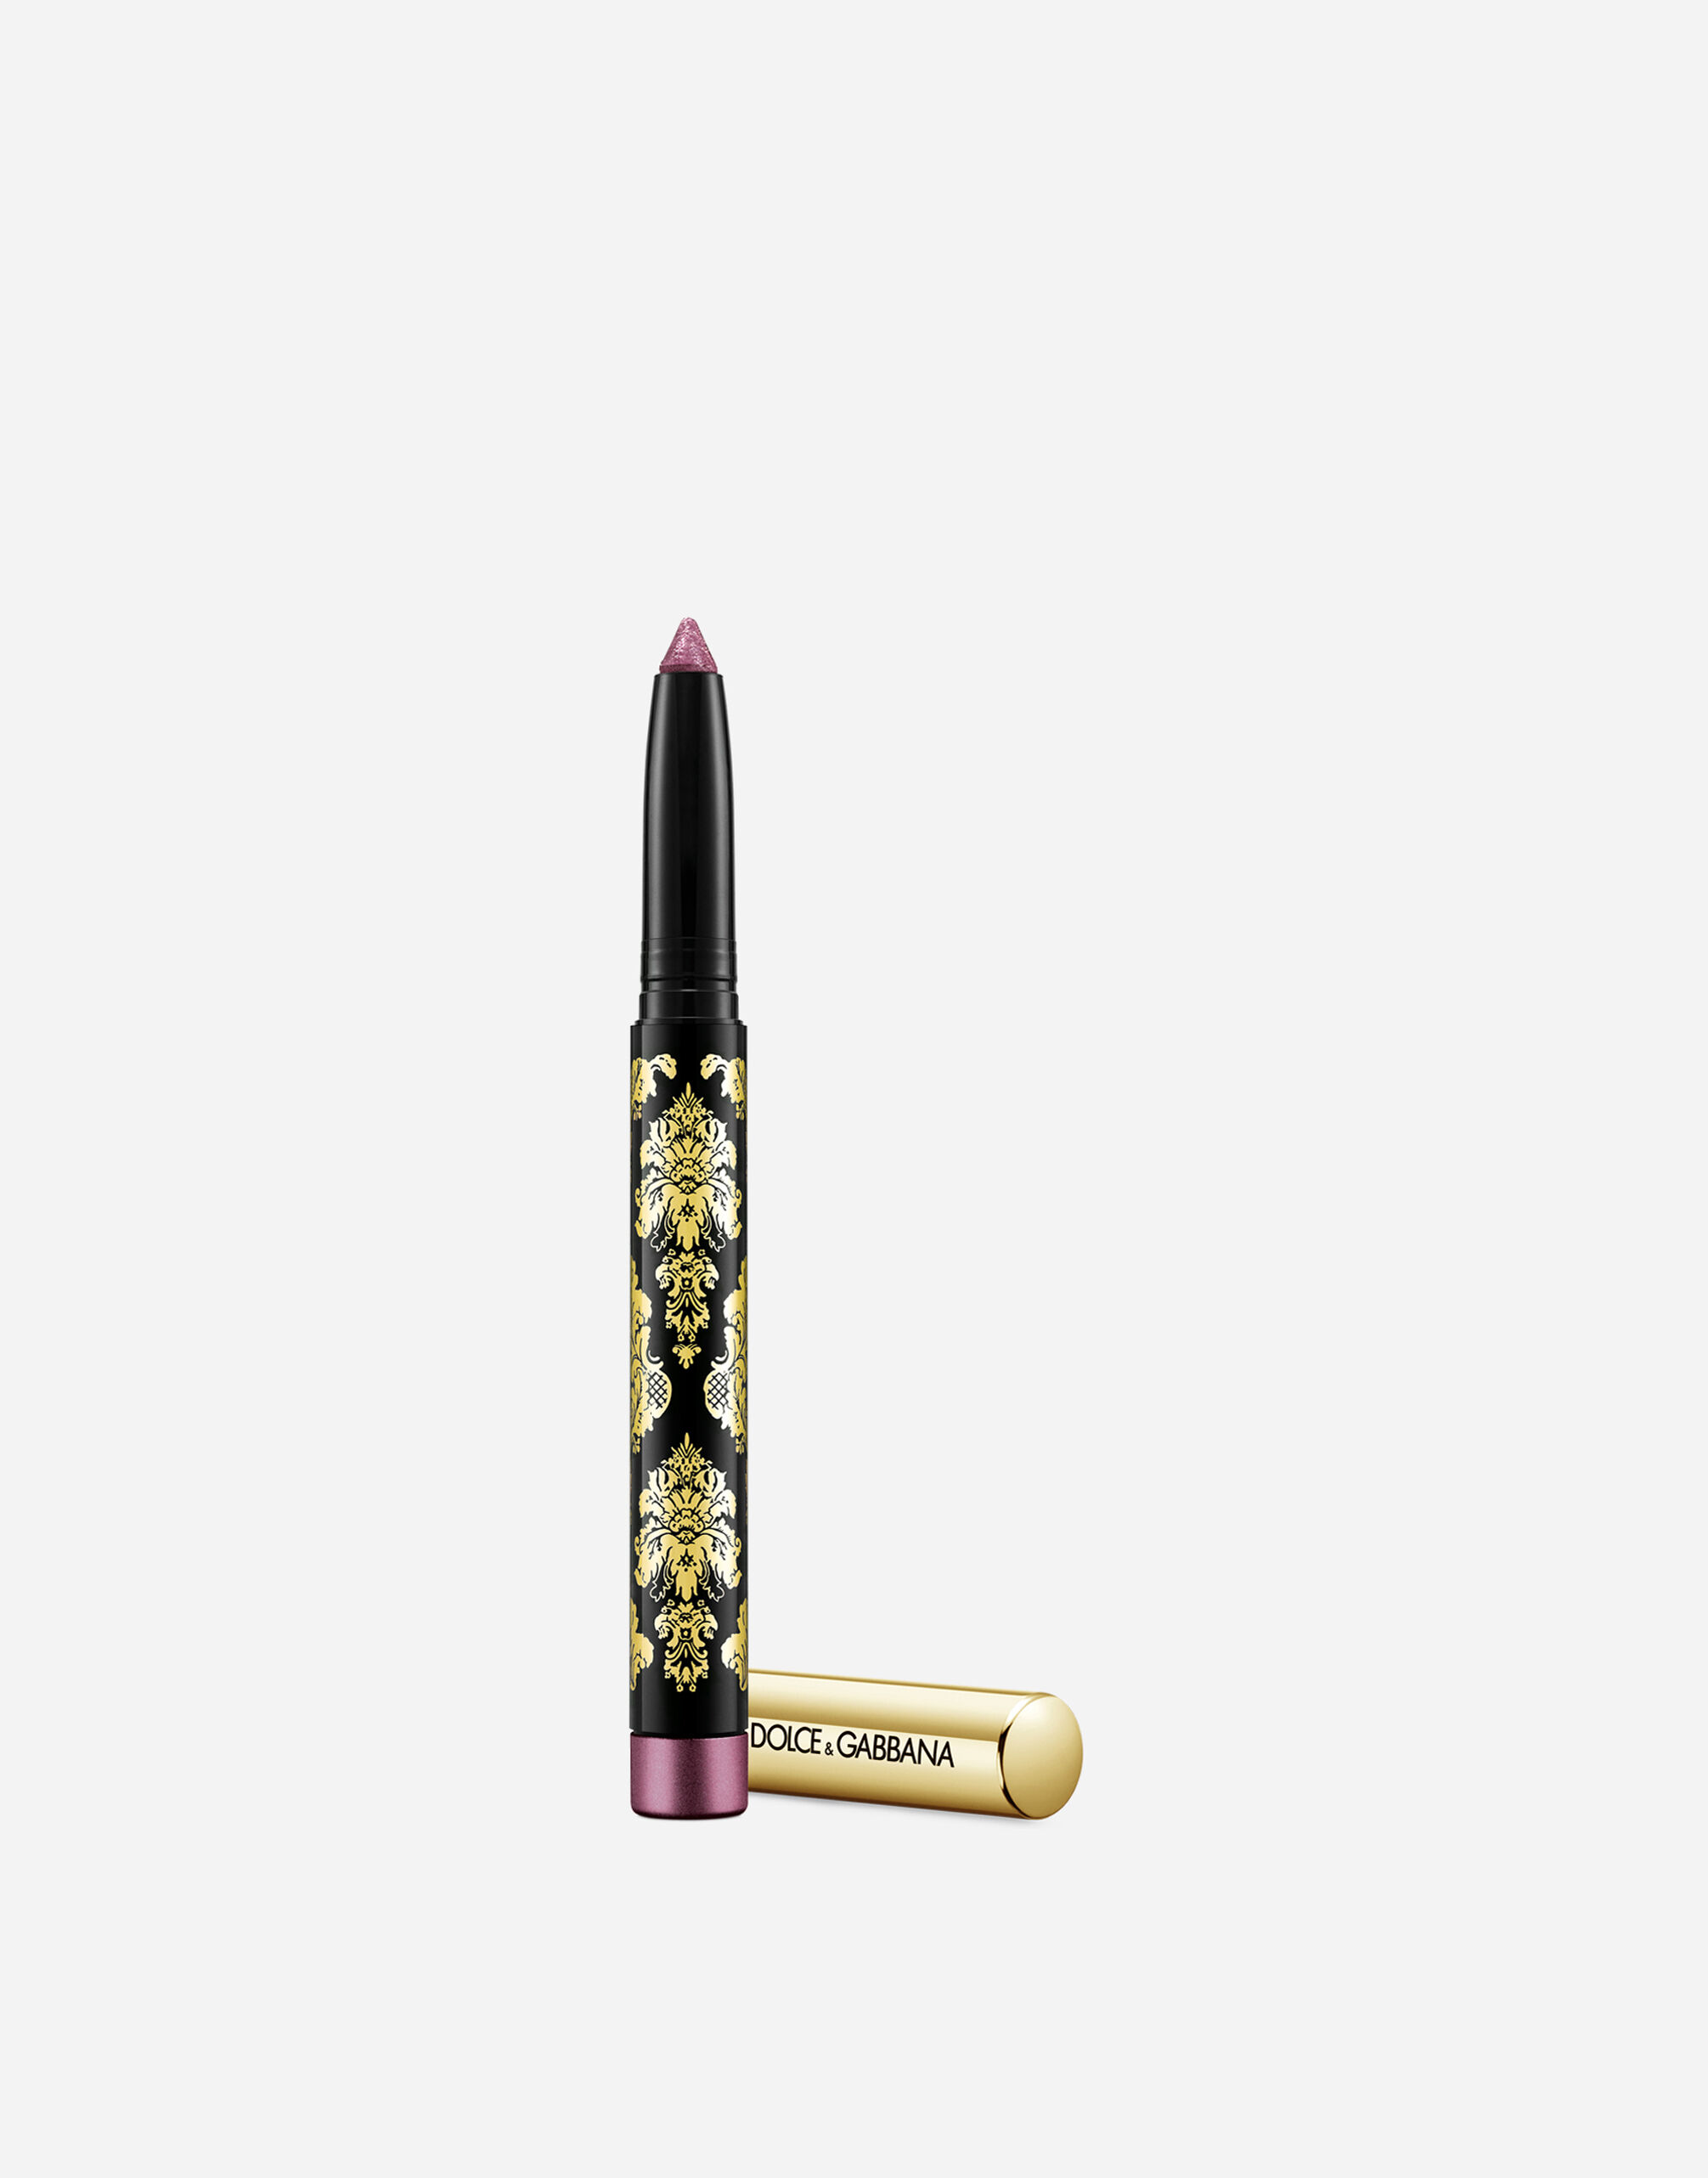 Тени-карандаш для глаз Dolce & Gabbana Intenseyes кремовые, №9 Dahlia, 1,4 г тени для век revolution makeup в стике stick shadow lustre wand gold flare